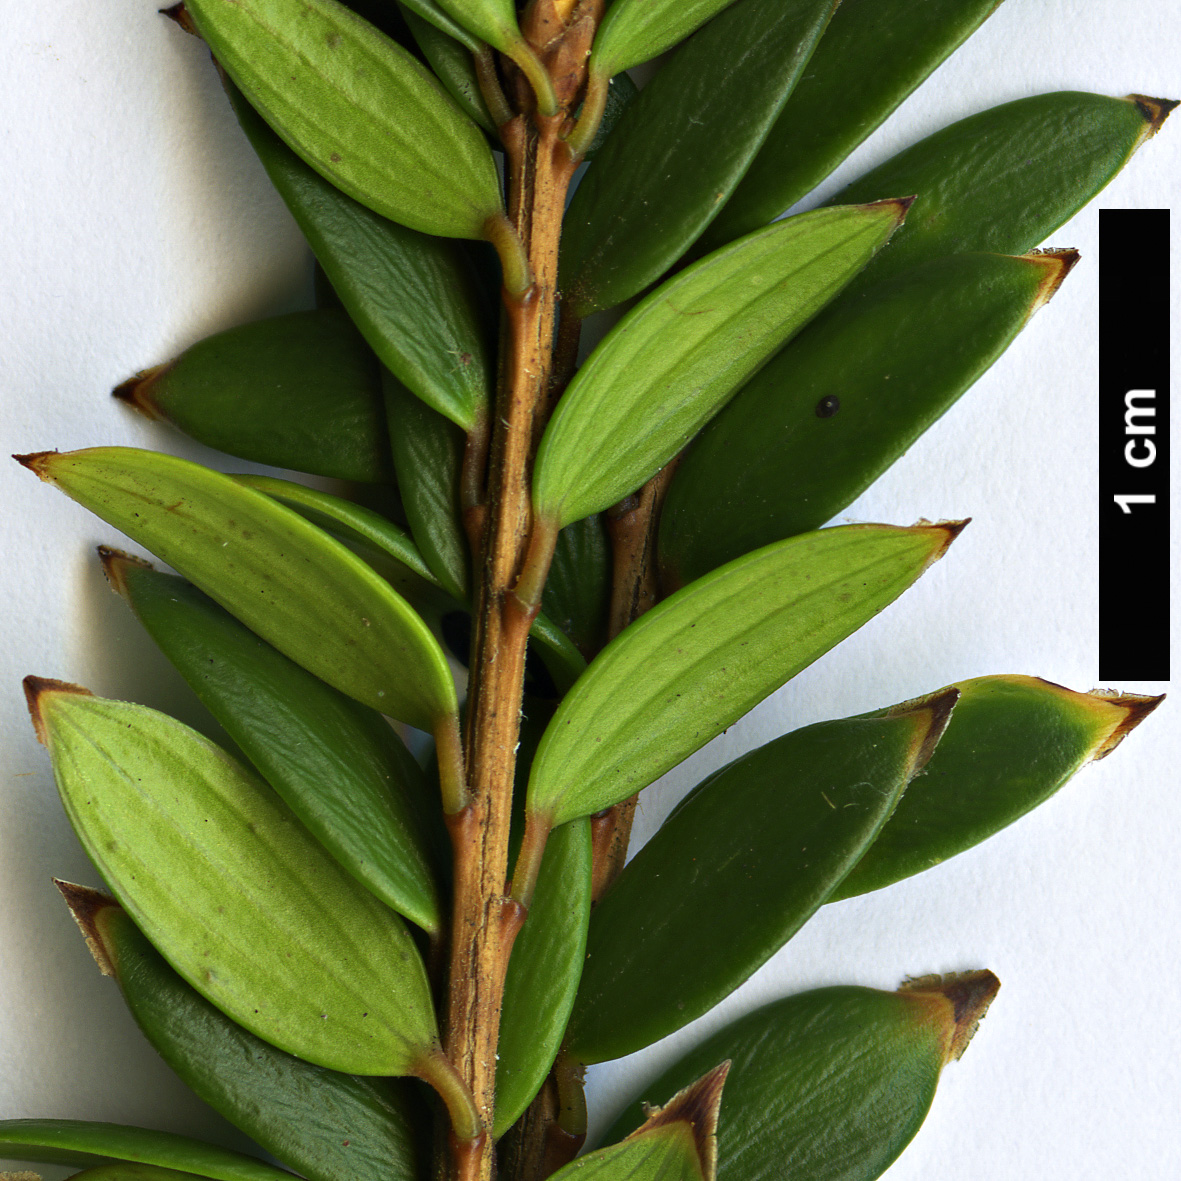 High resolution image: Family: Ericaceae - Genus: Trochocarpa - Taxon: disticha